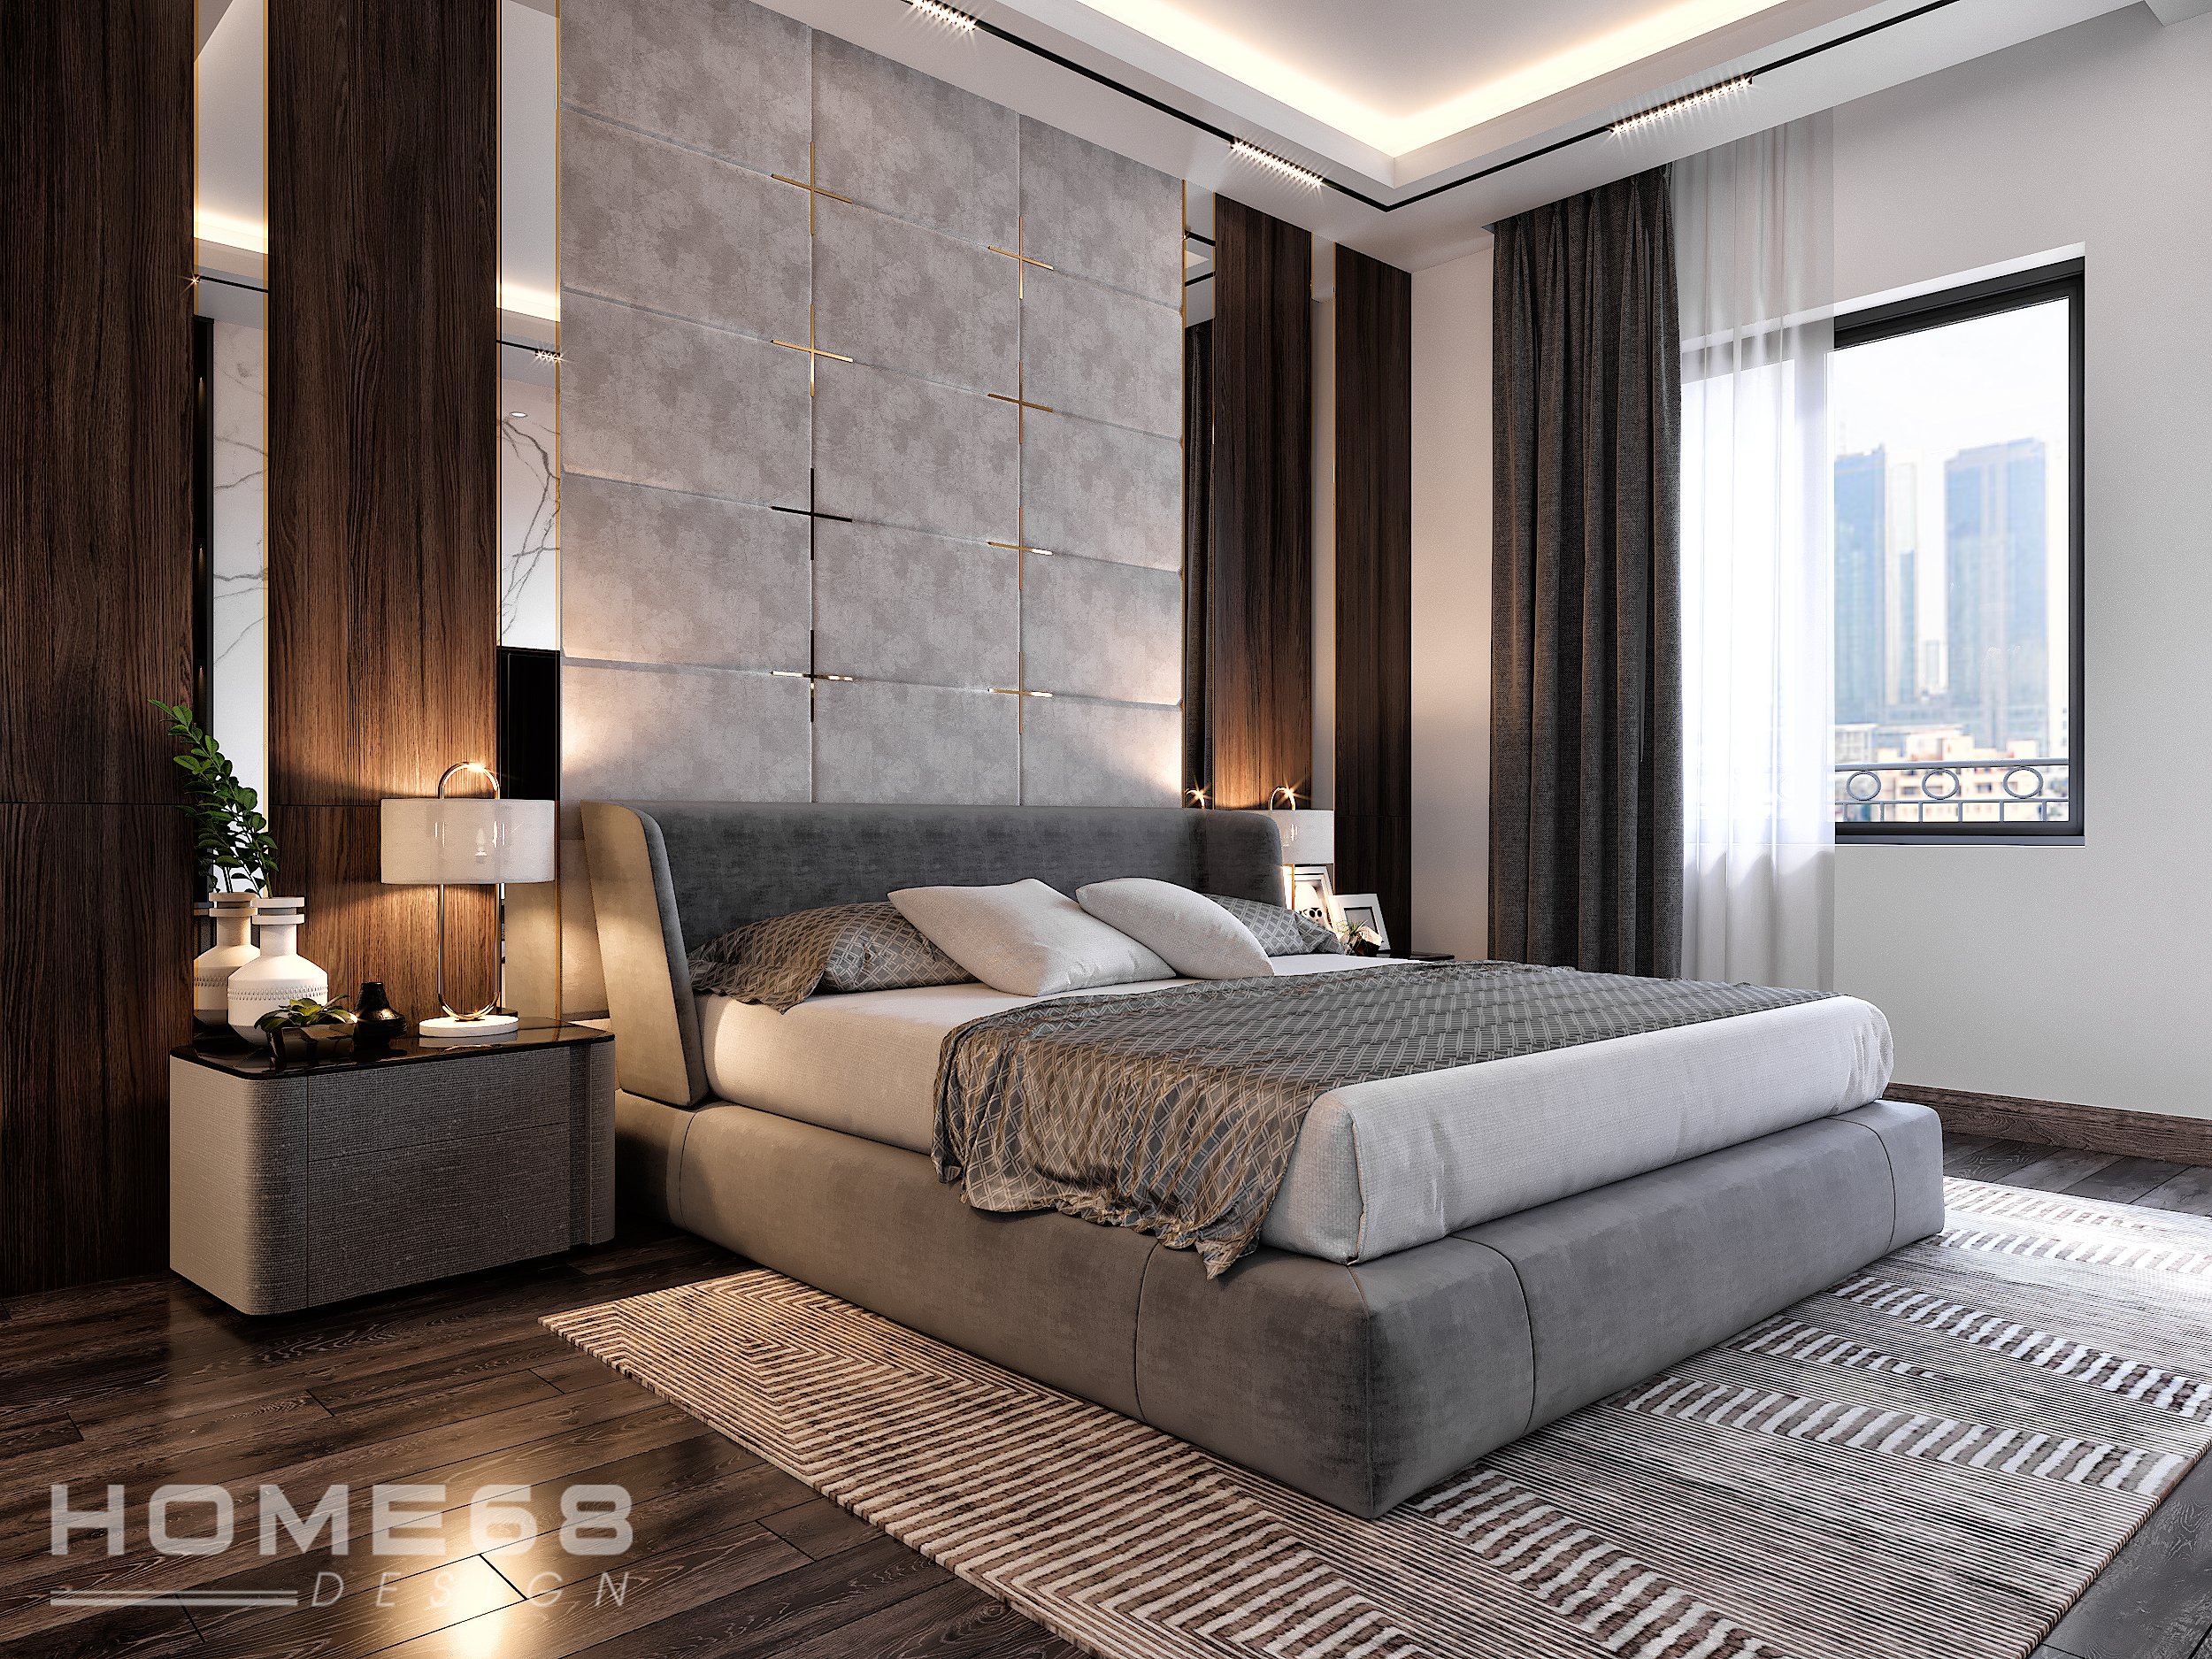 Sự kết hợp hài hòa giữa gam màu tươi sáng và đồ nội thất đơn giản, hiện đại sẽ làm cho phòng ngủ của bạn thật sự nổi bật và cá tính.